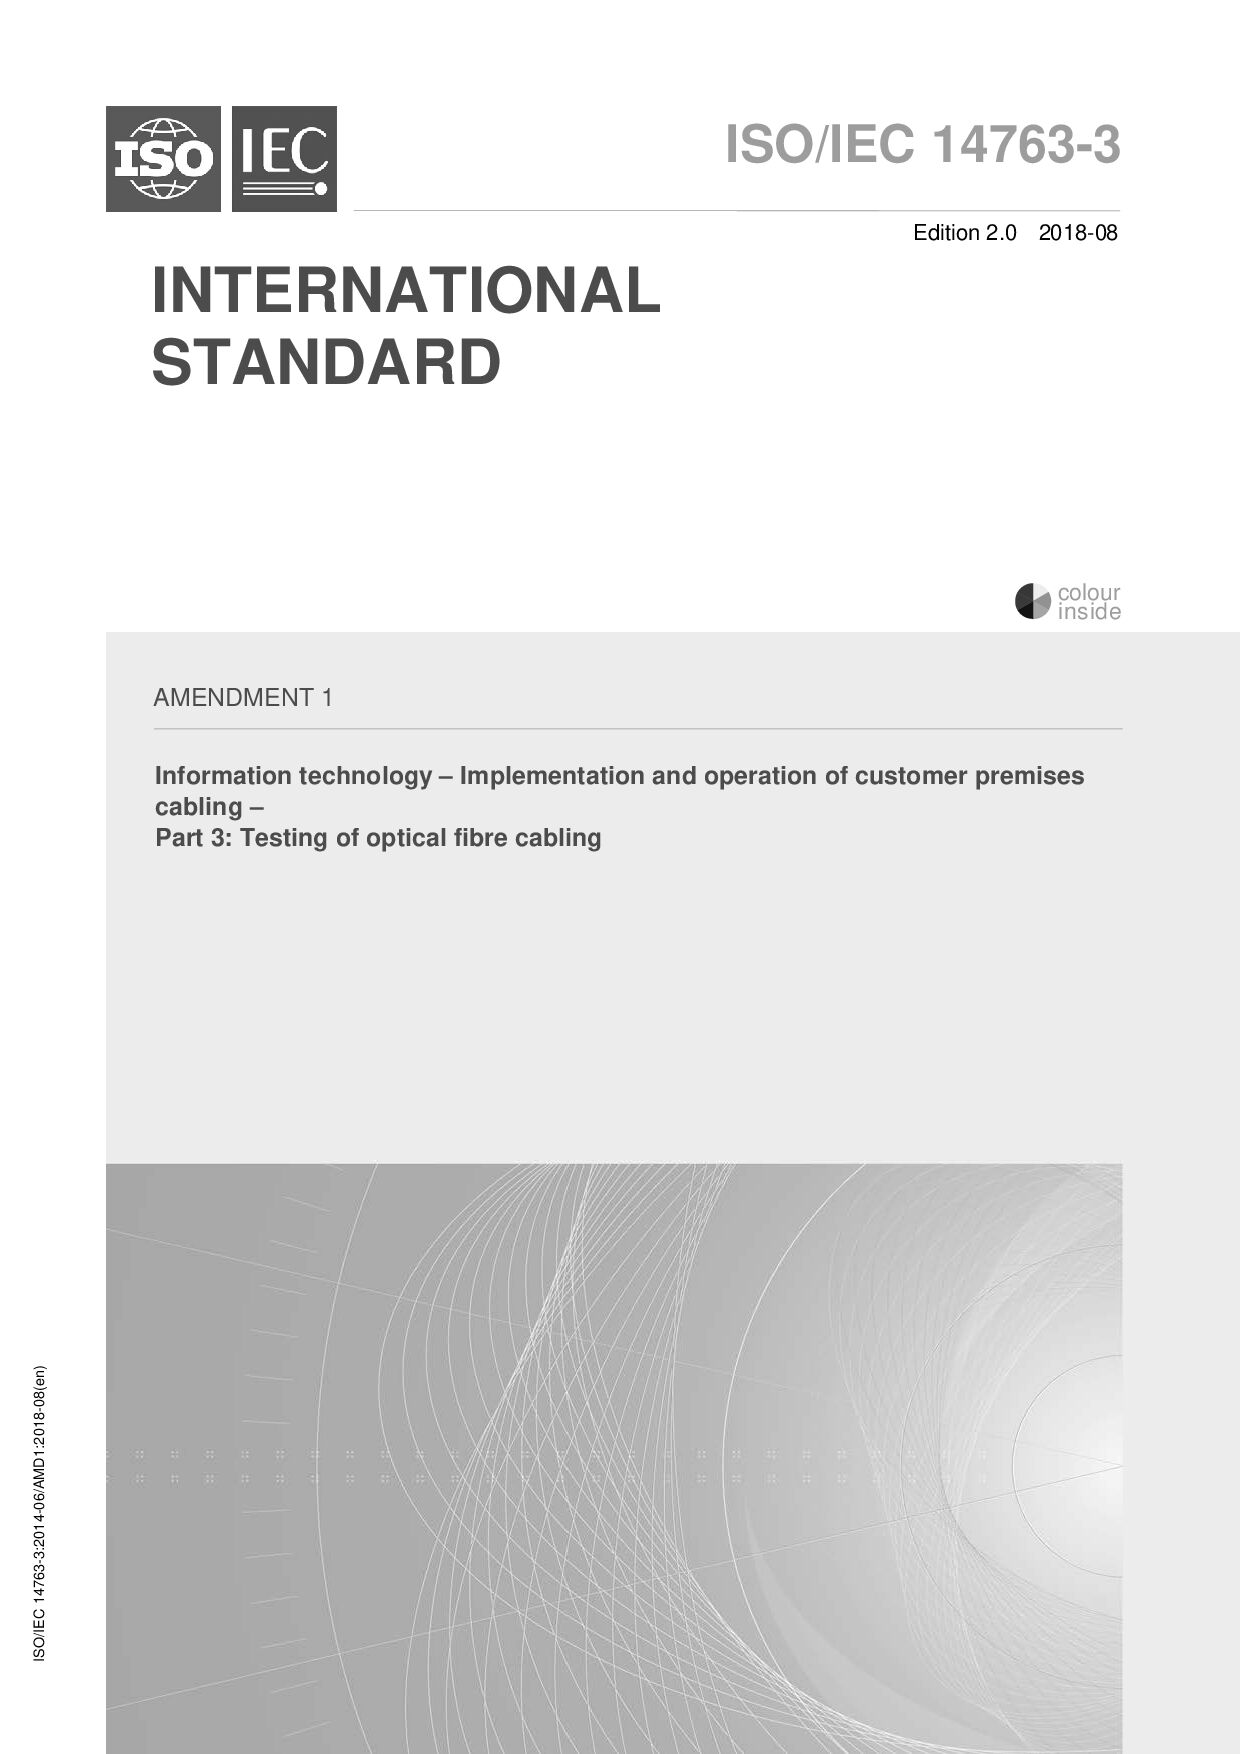 ISO/IEC 14763-3:2014/Amd 1:2018